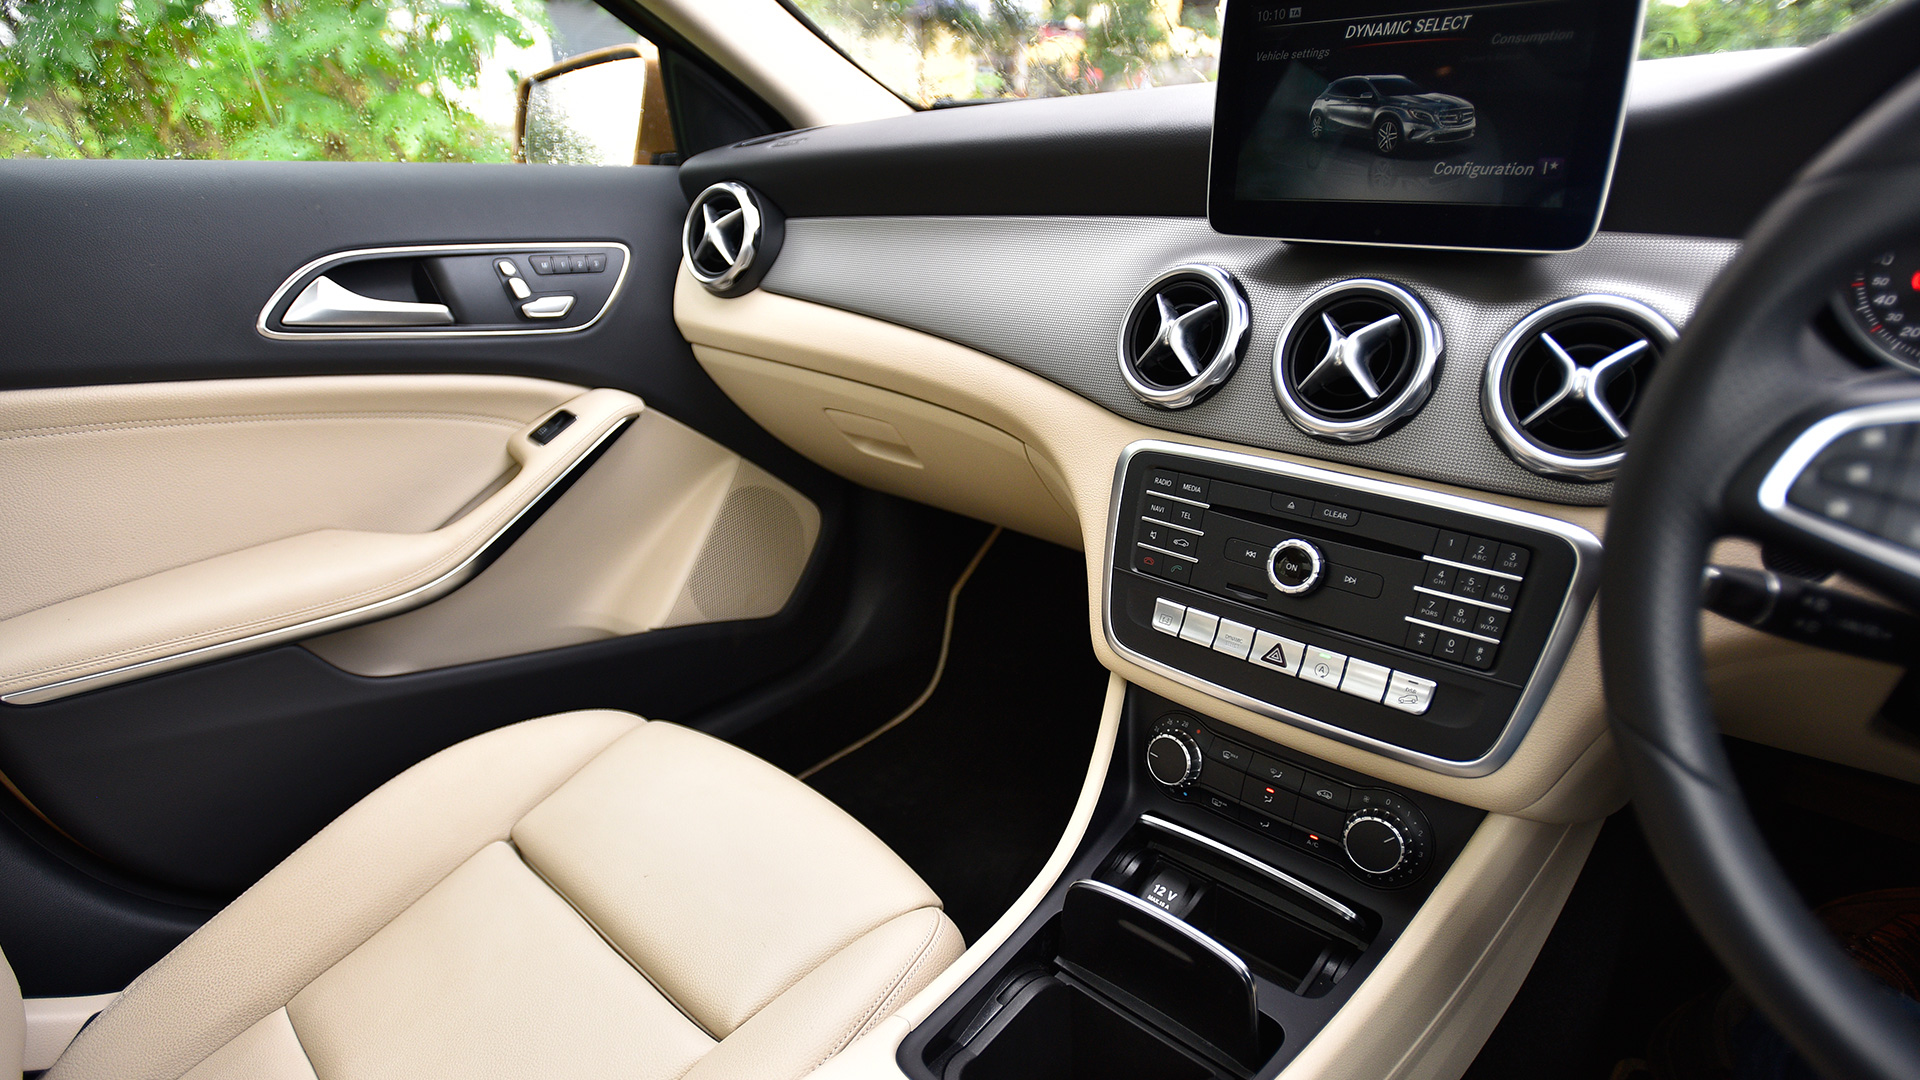 Mercedes Benz GLA 2017 220d 4Matic Interior